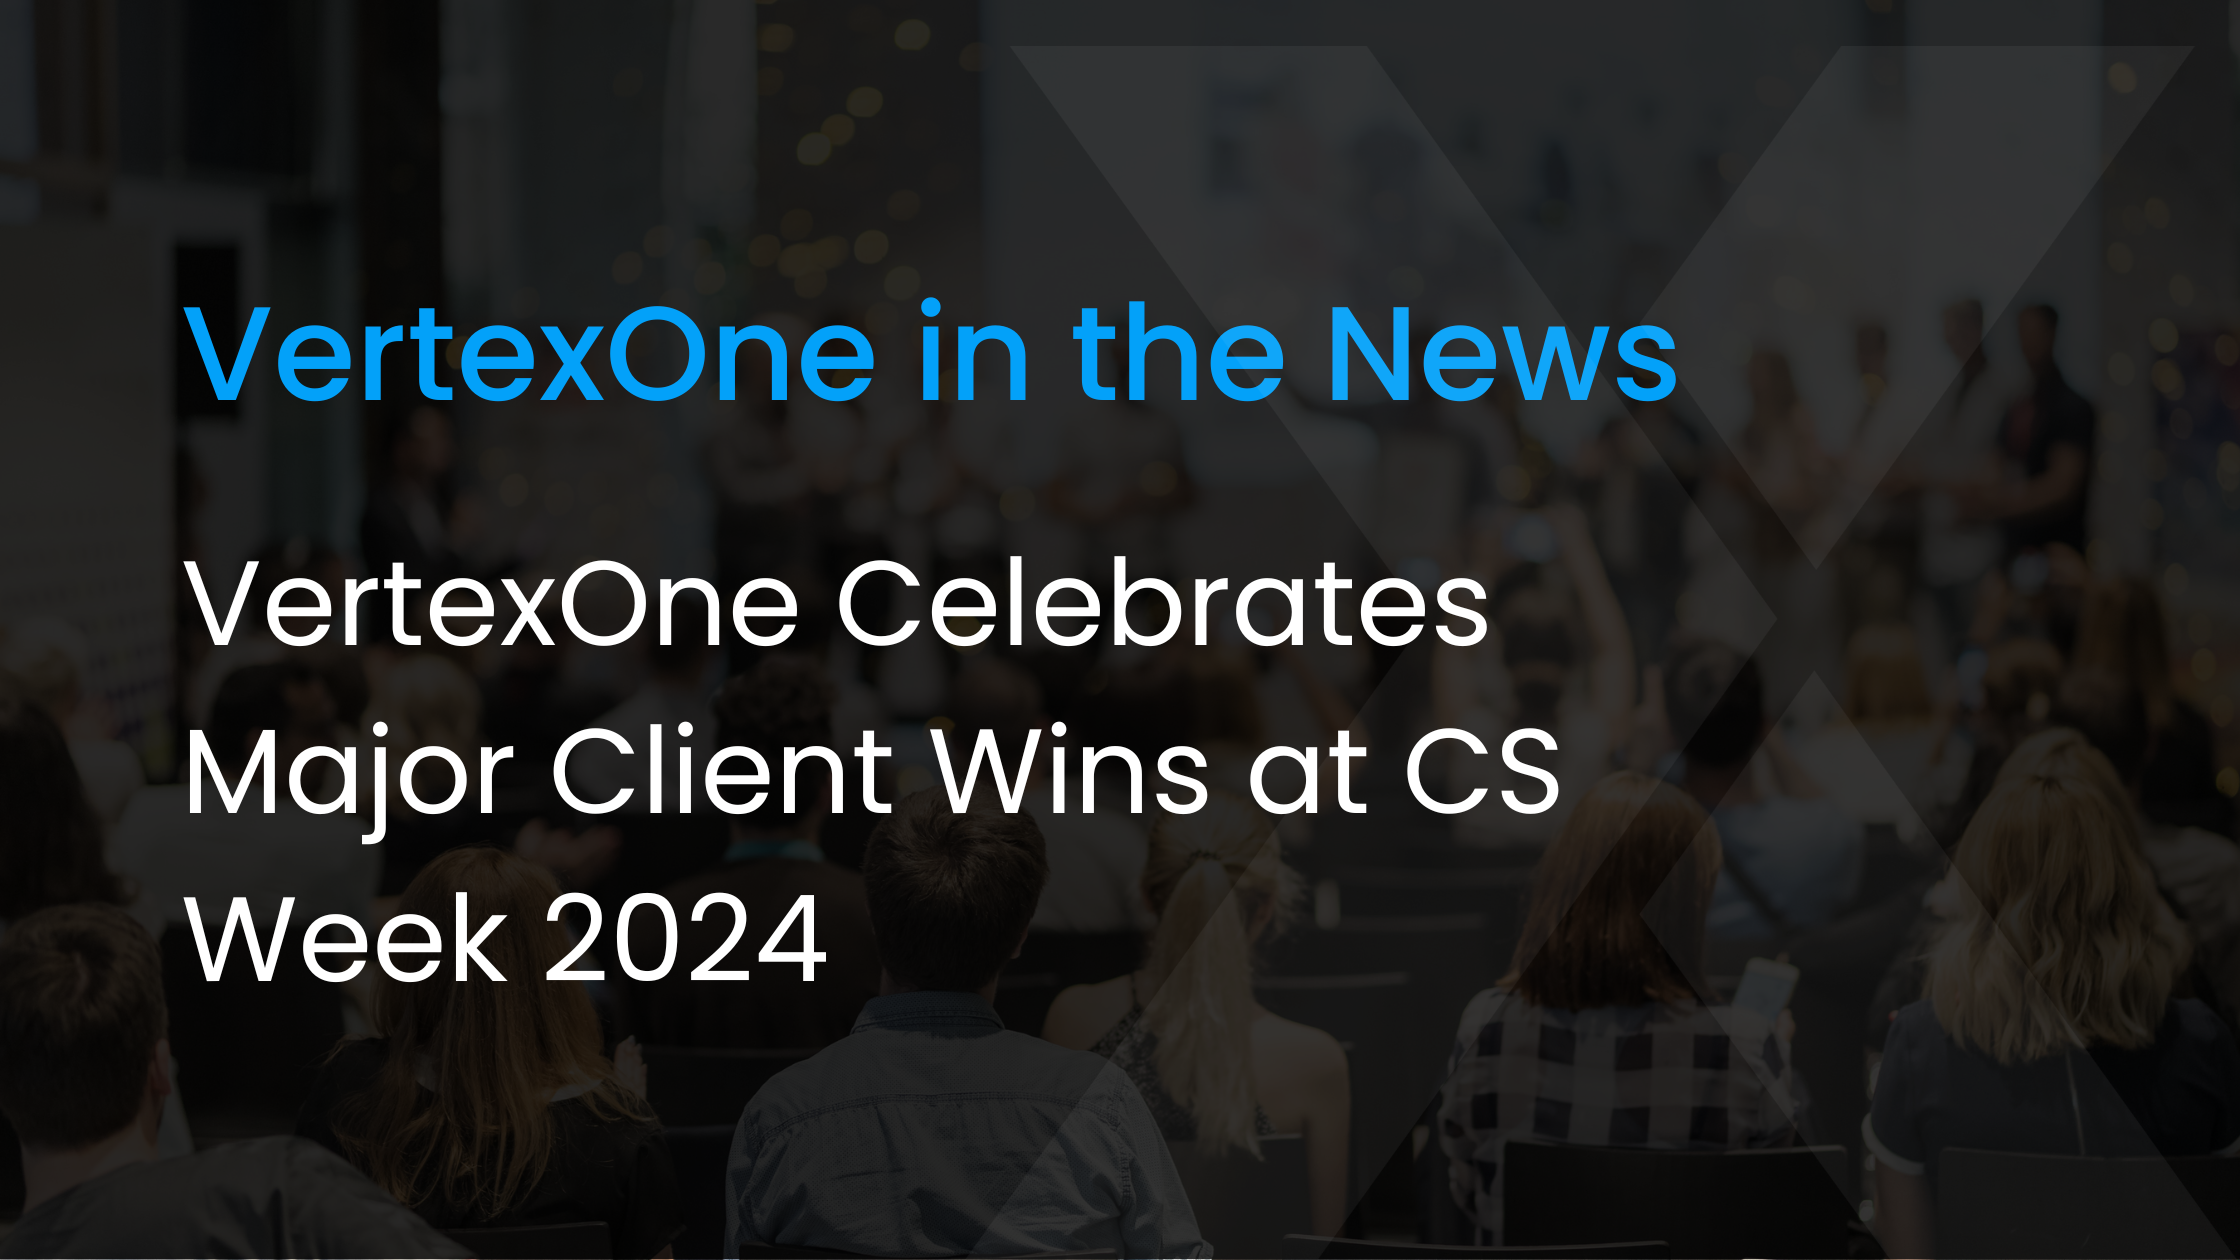 VertexOne Celebrates Client Wins at CS Week 2024